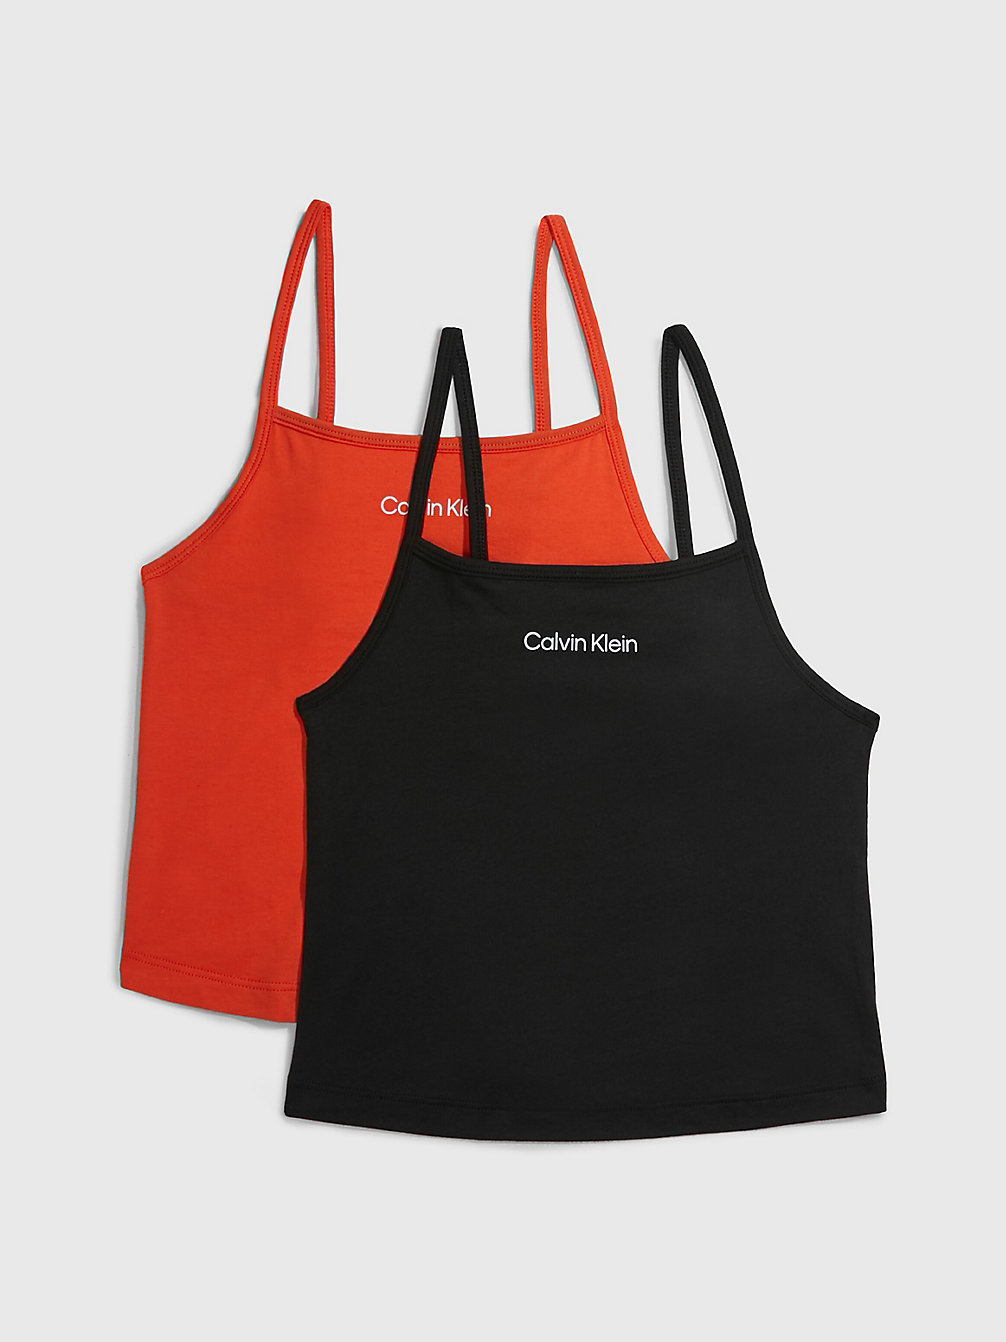 ACIDORANGE/PVHBLACK 2-Pack Tanktops - Modern Cotton undefined girls Calvin Klein